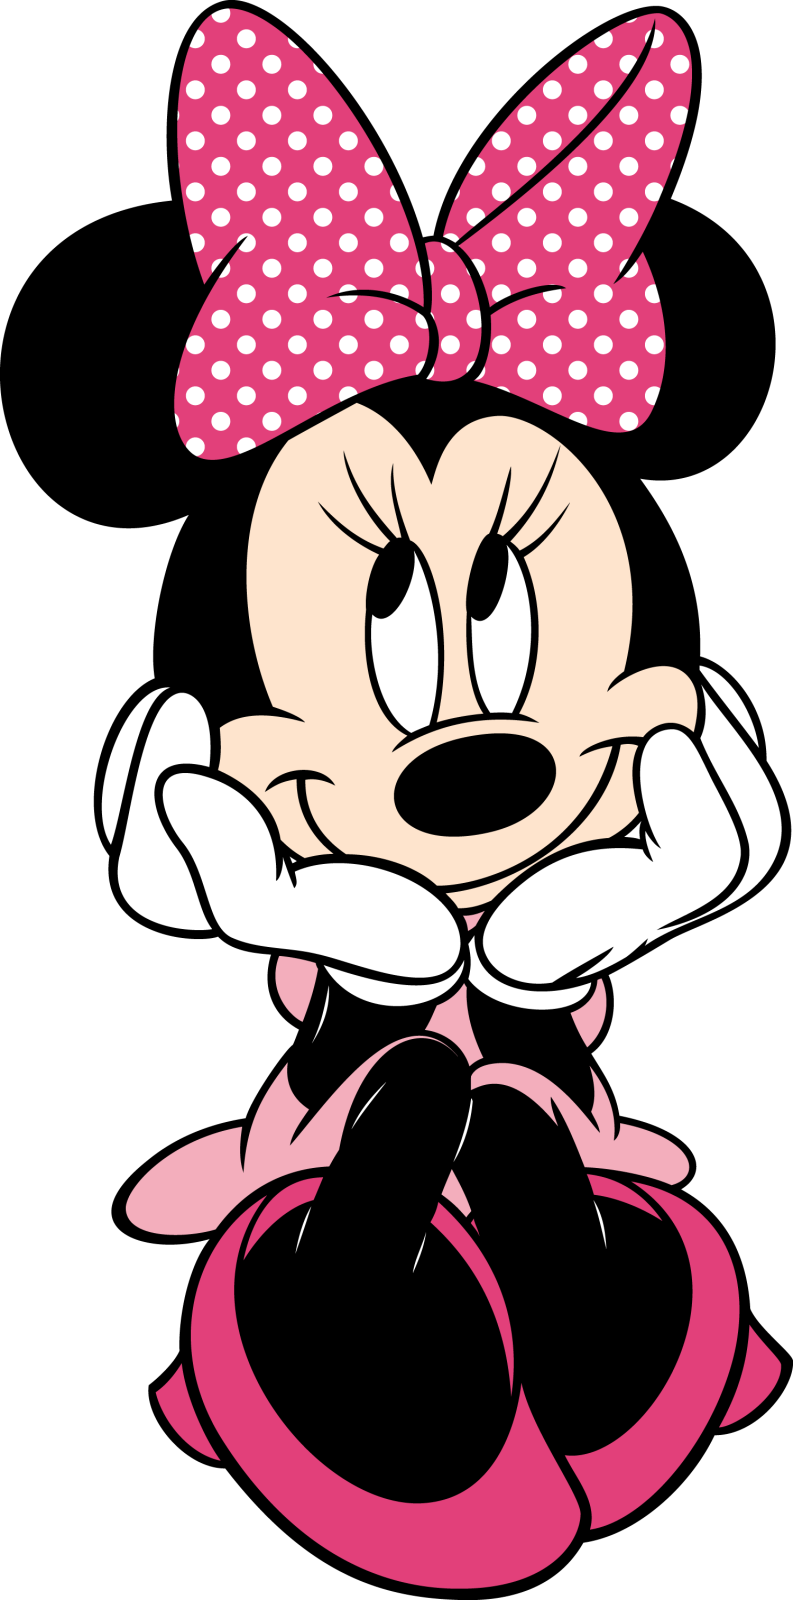 Descargar Imagenes Gratis: Minnie Mouse PNG sin fondo